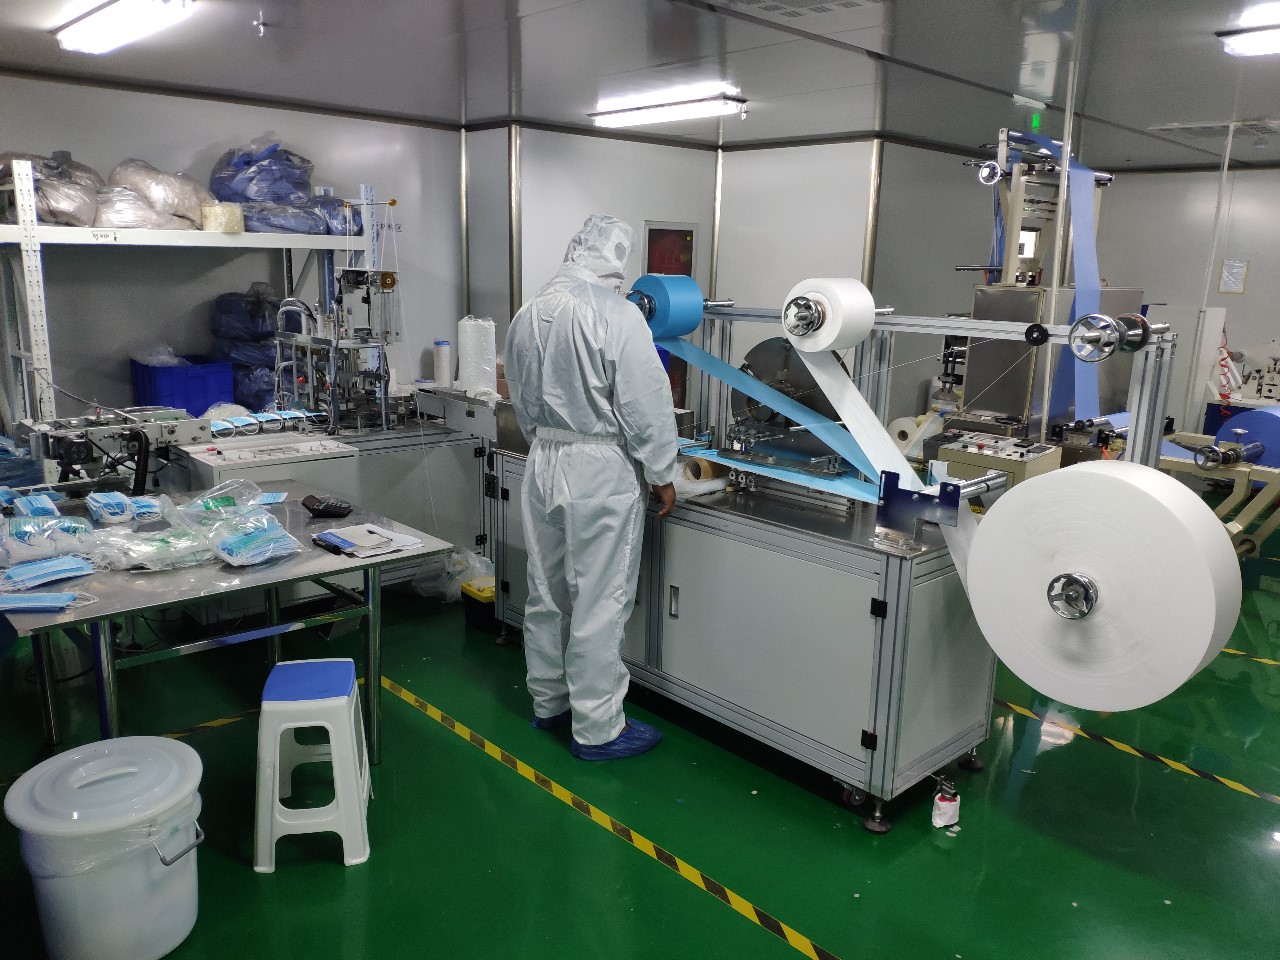 淄博创奇医疗用品有限公司生产车间用于口罩生产的制片机、自动点焊机一刻不停地运转。